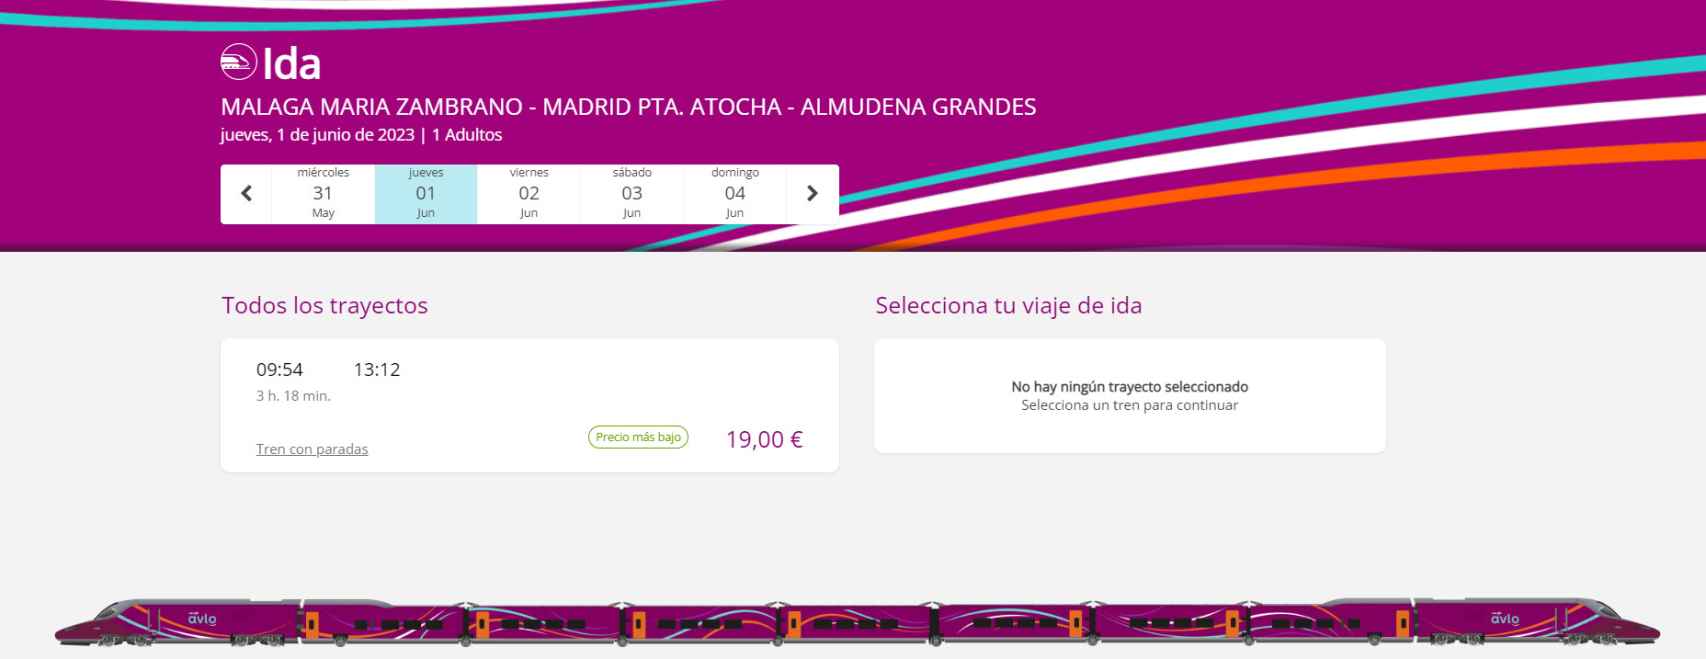 Imagen del precio ofertado para el primer viaje en AVLO desde Málaga a Madrid.